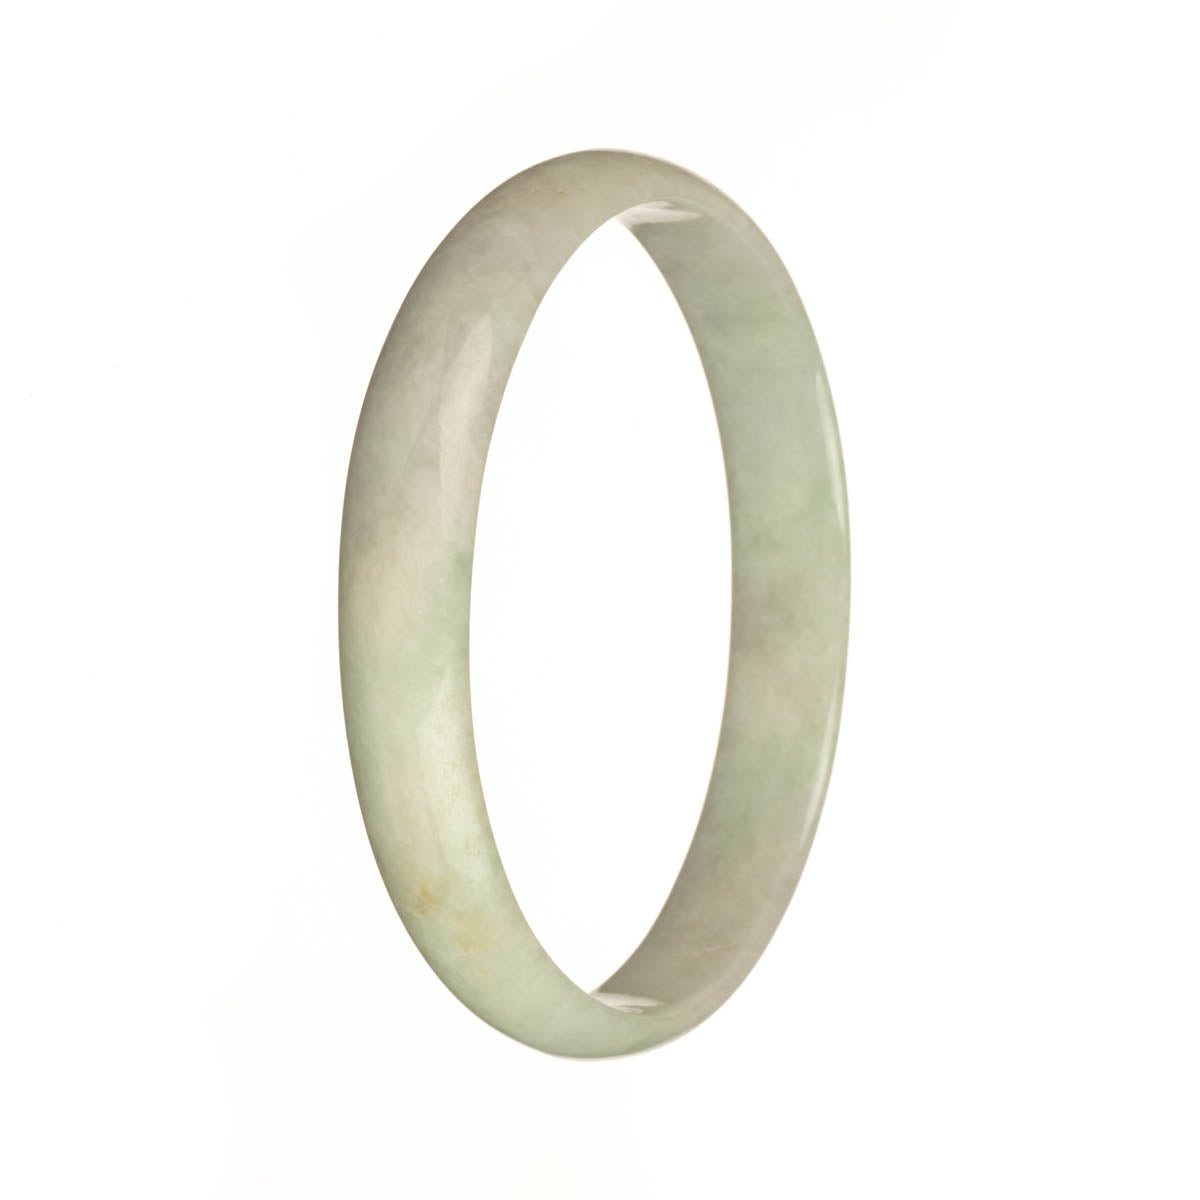 78.2mm Greyish White and Light Green Jade Bangle Bracelet